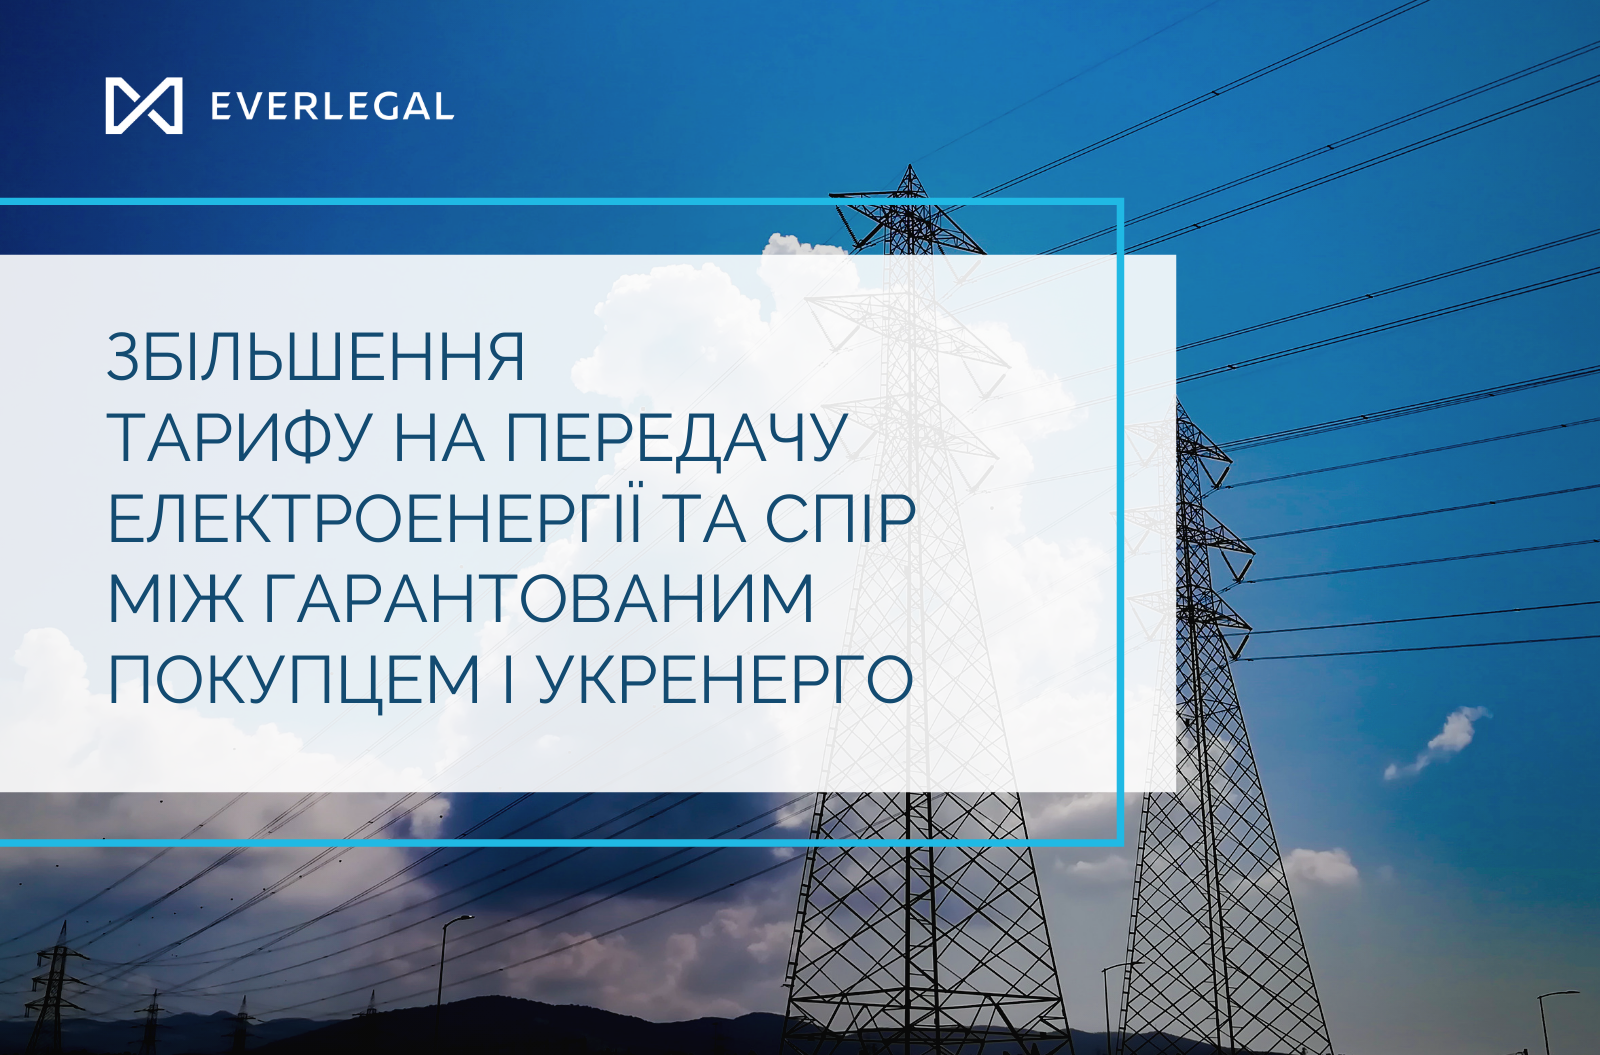 Збільшення тарифу на передачу електроенергії та спір між Гарантованим покупцем і Укренерго